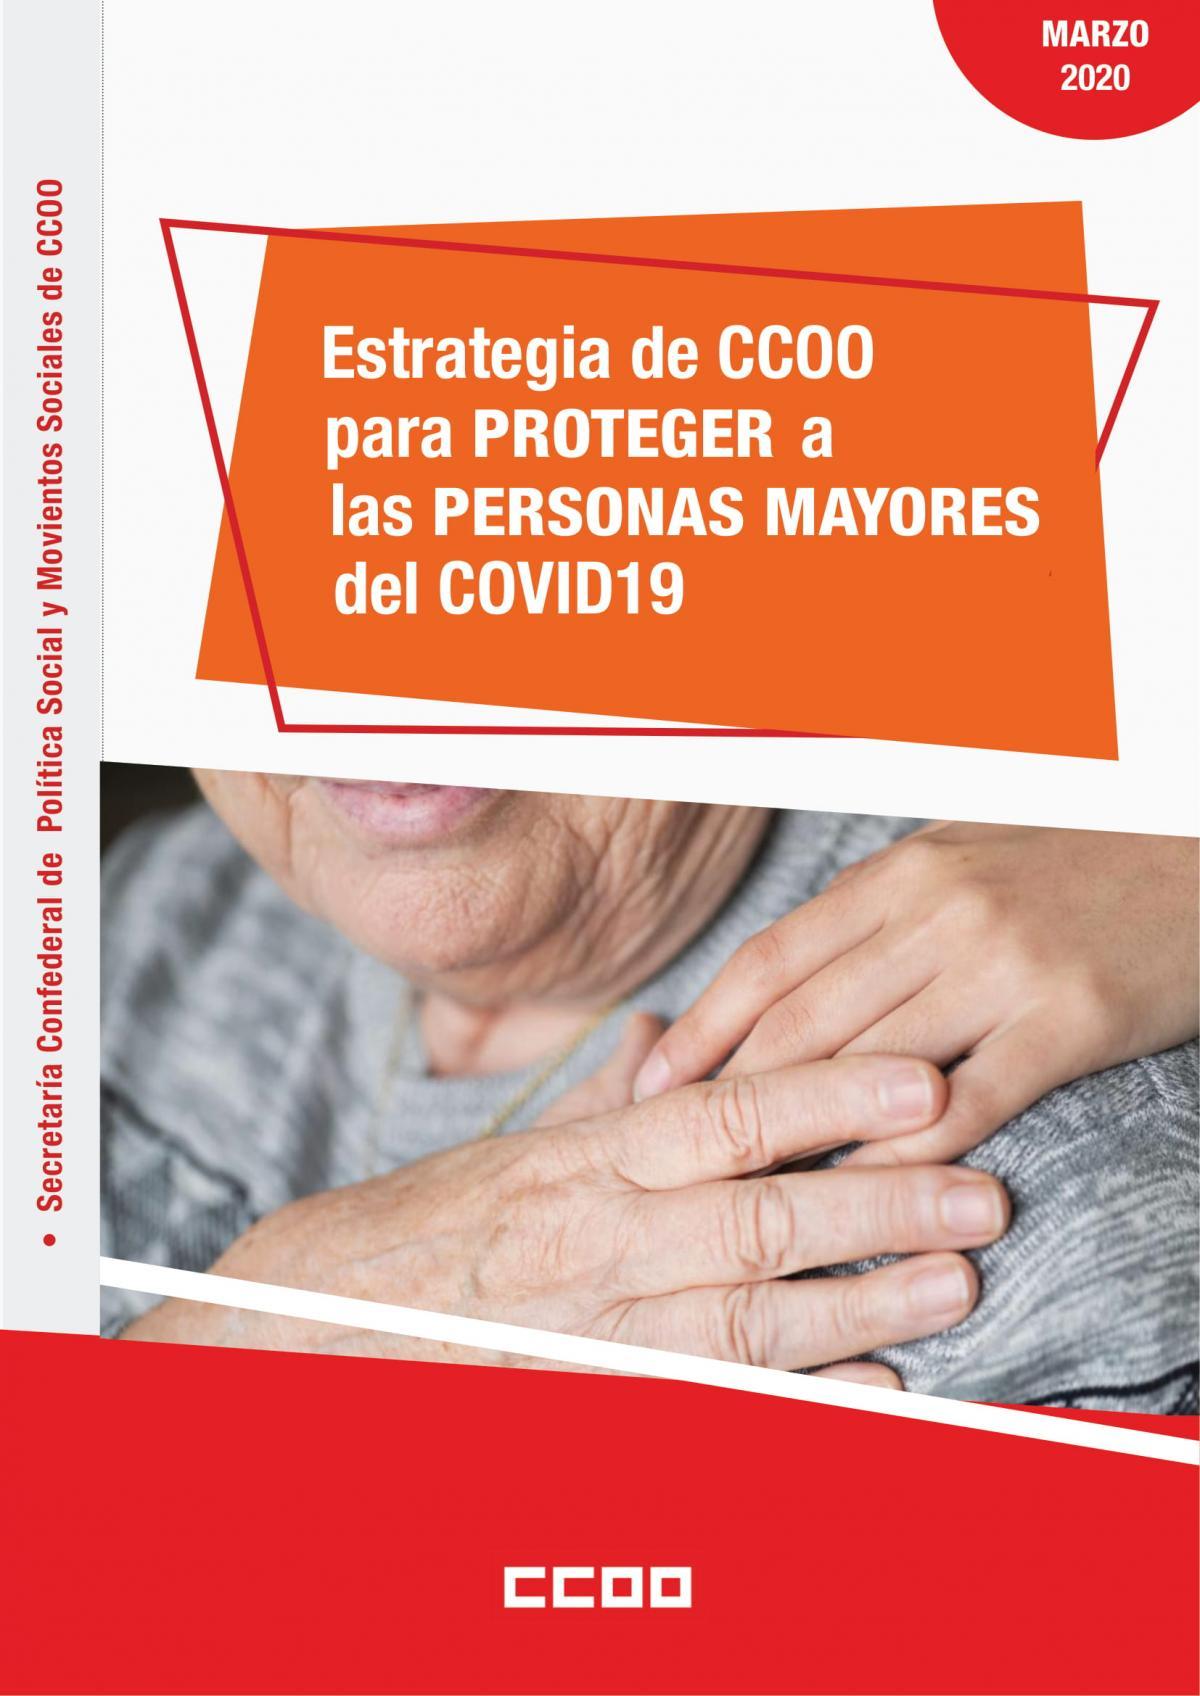 Estrategia de CCOO para proteger a las personas mayores del COVID-19